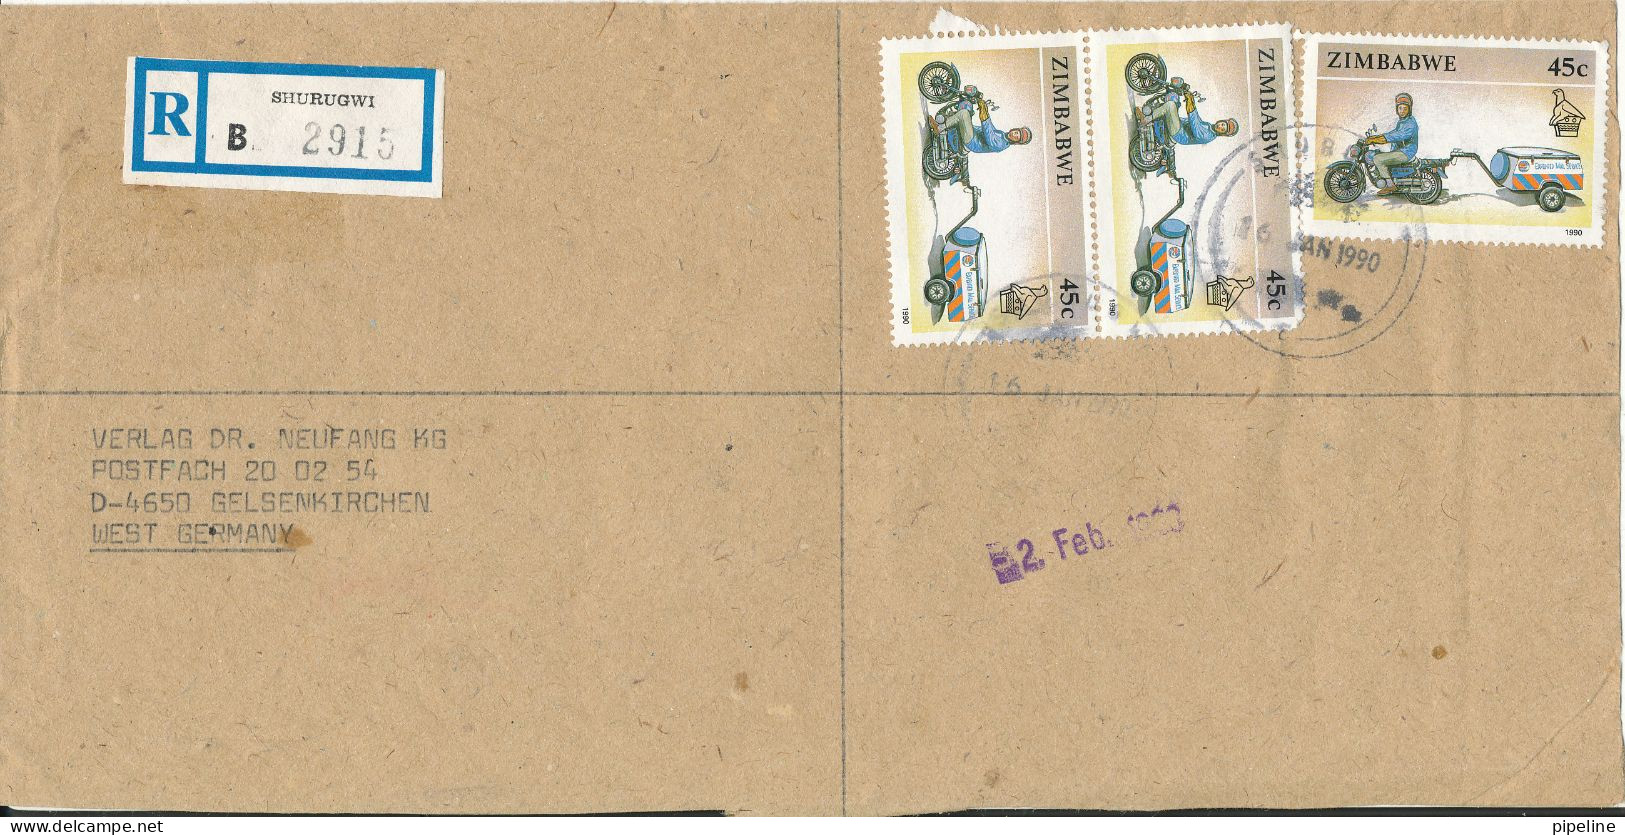 Zimbabwe Registered Cover Sent To Germany Shurugwi 26-1-1990 Motorbike Stamps - Zimbabwe (1980-...)